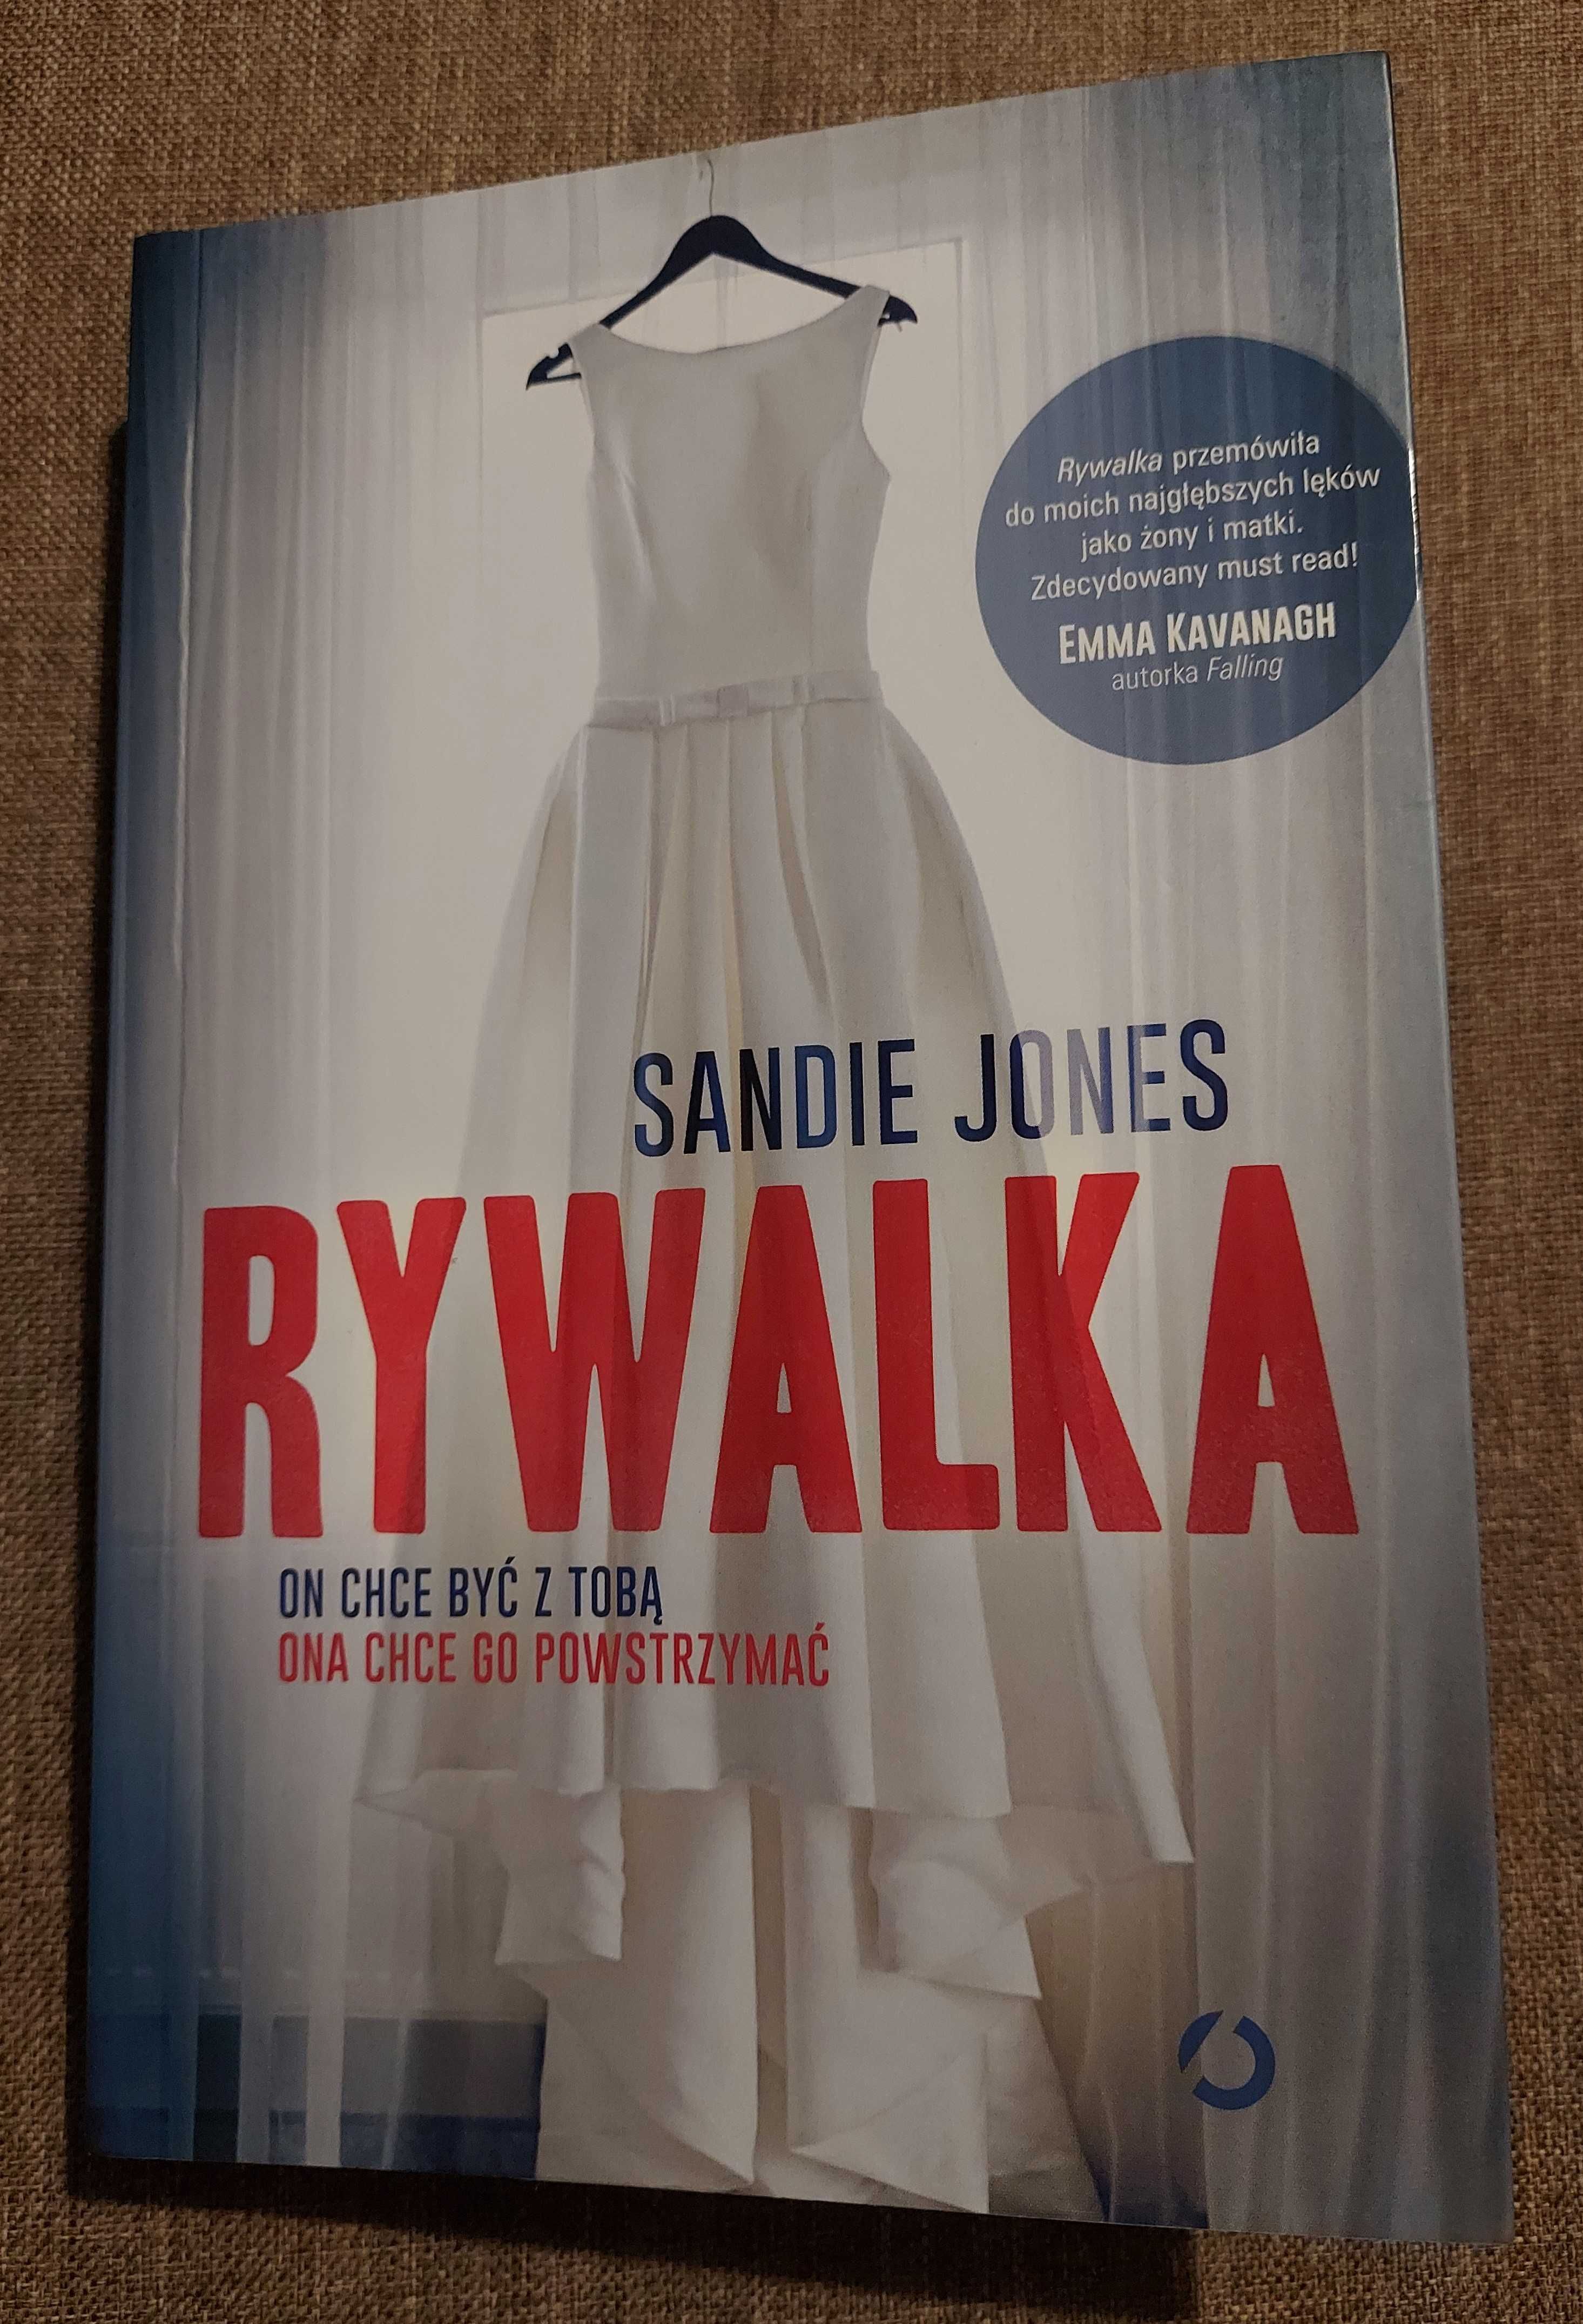 S. Jones "Rywalka"